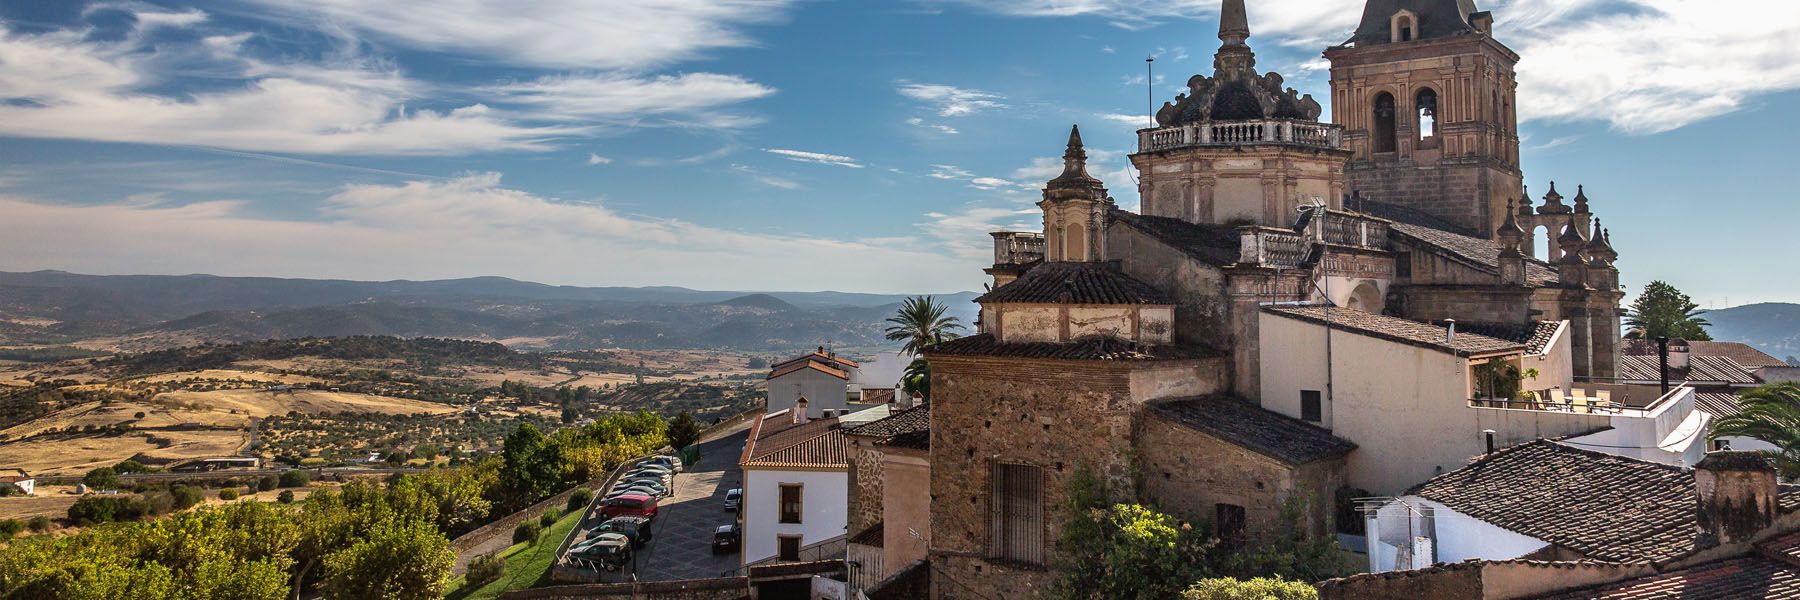 Plan Fin de Semana en el Sur de Extremadura